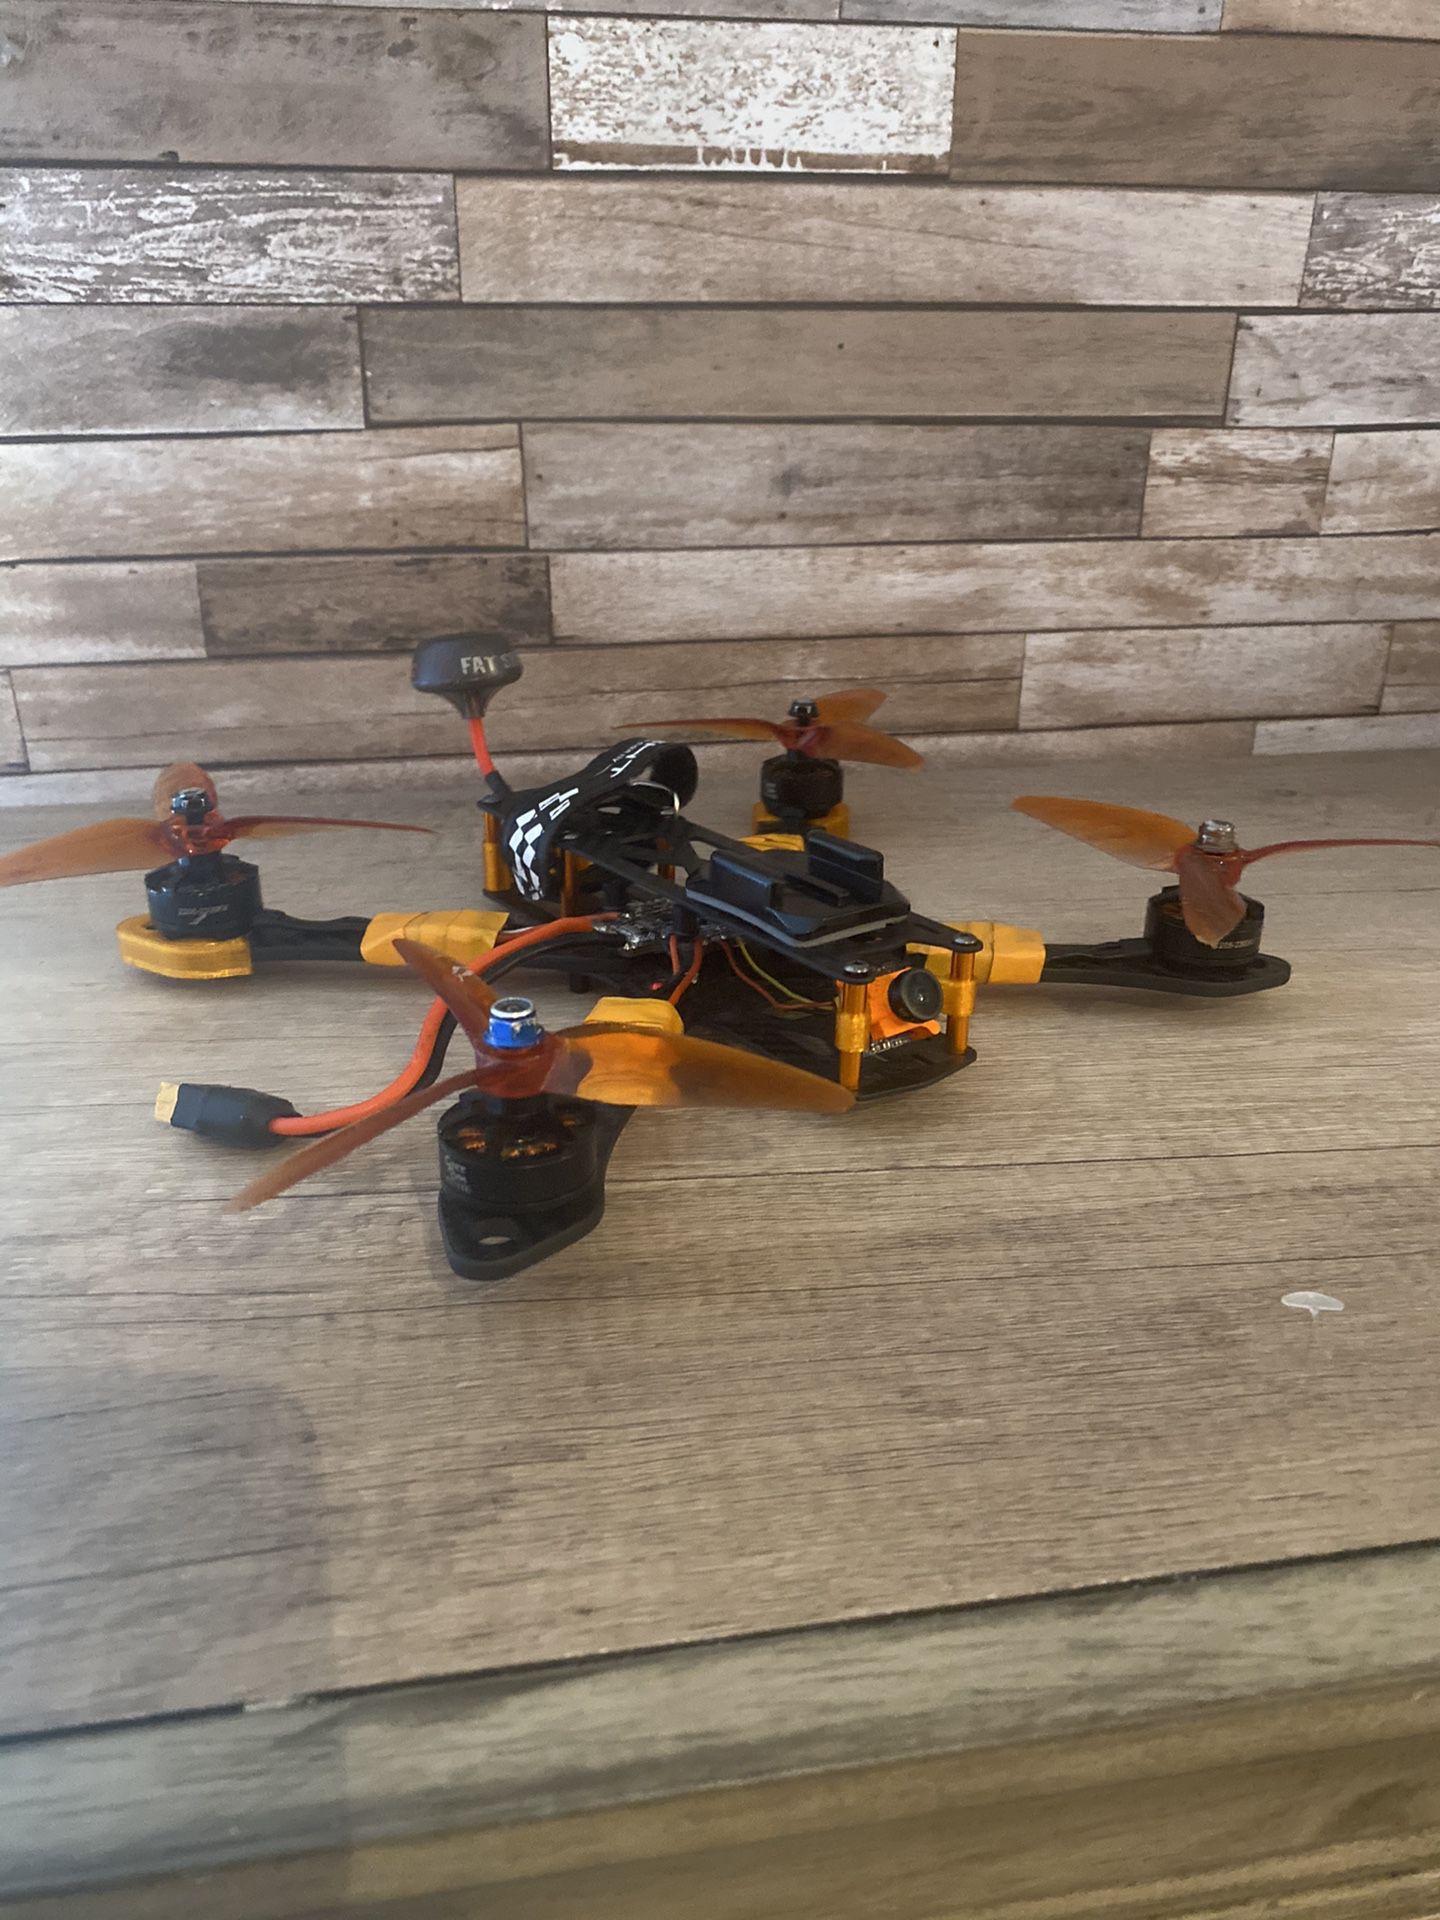 Race drone